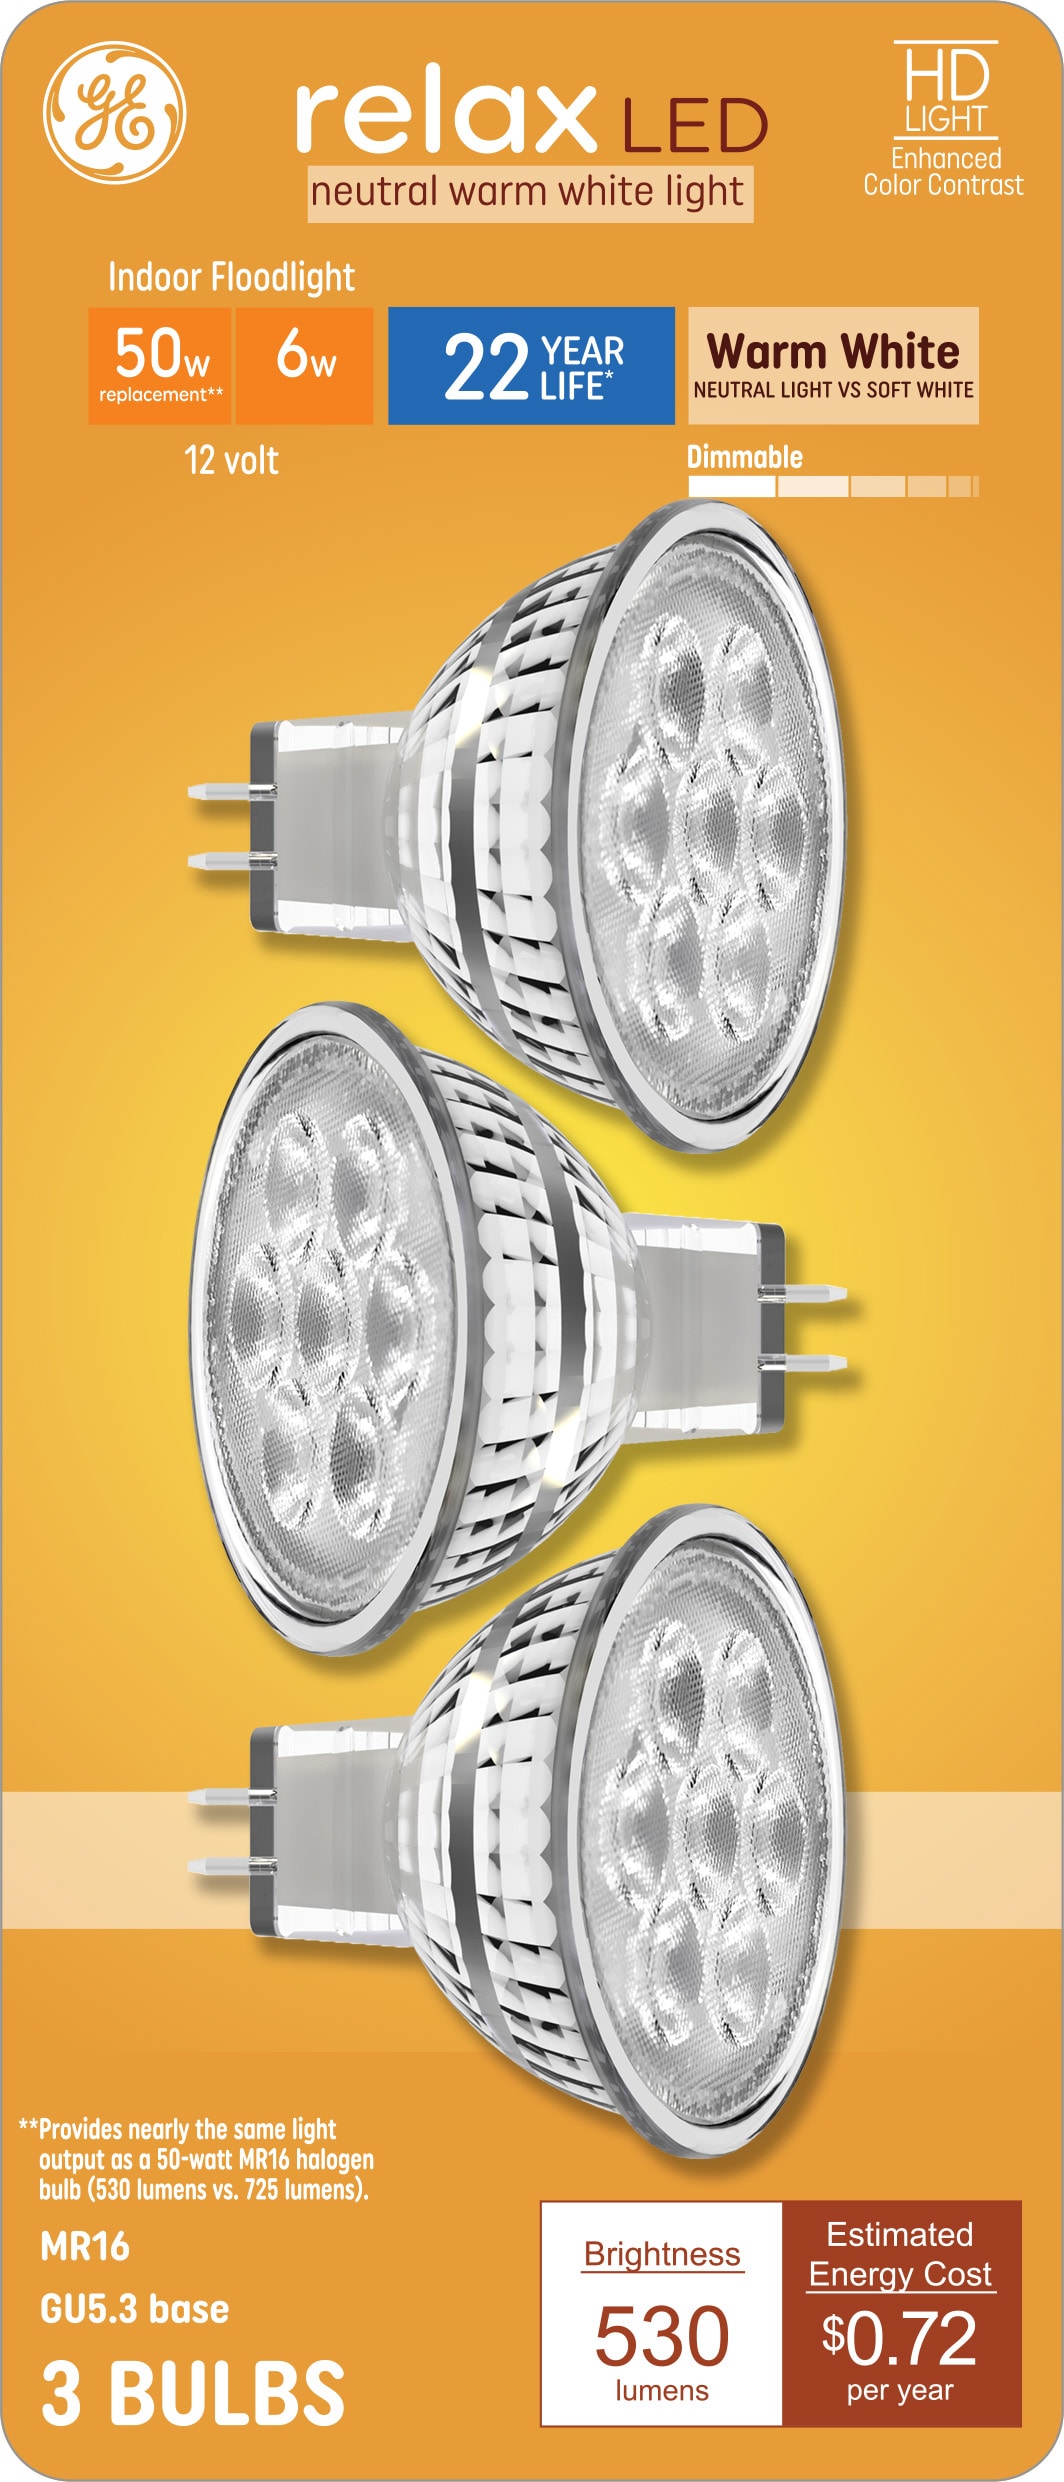 2 Ampoules GU5.3 - LED - 5W (équi 35W) = 450 Lm - 4000K / Lumière